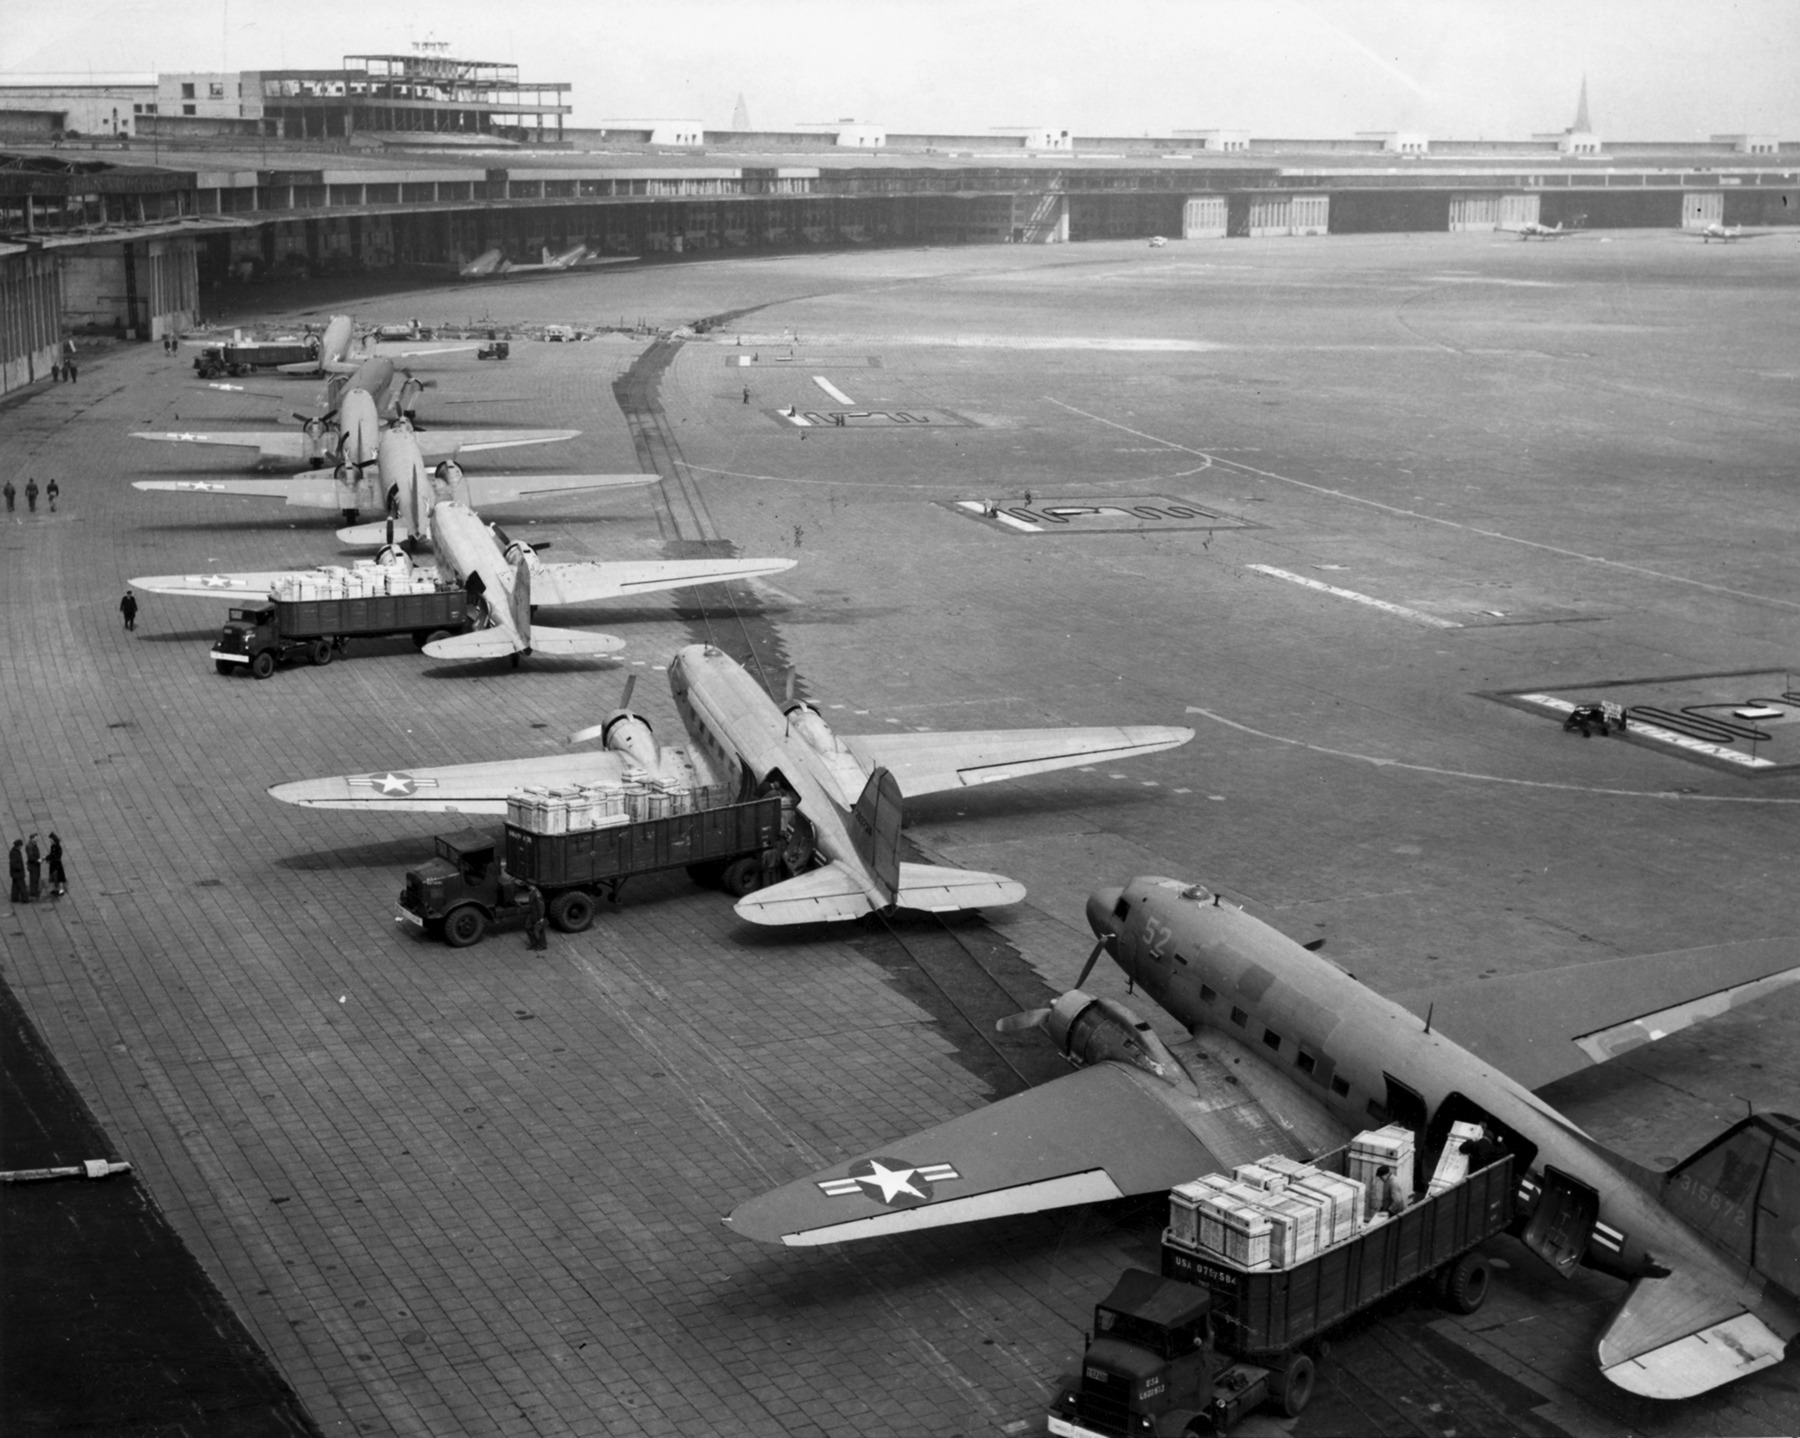 C-47s at Tempelhof Airport Berlin 1948